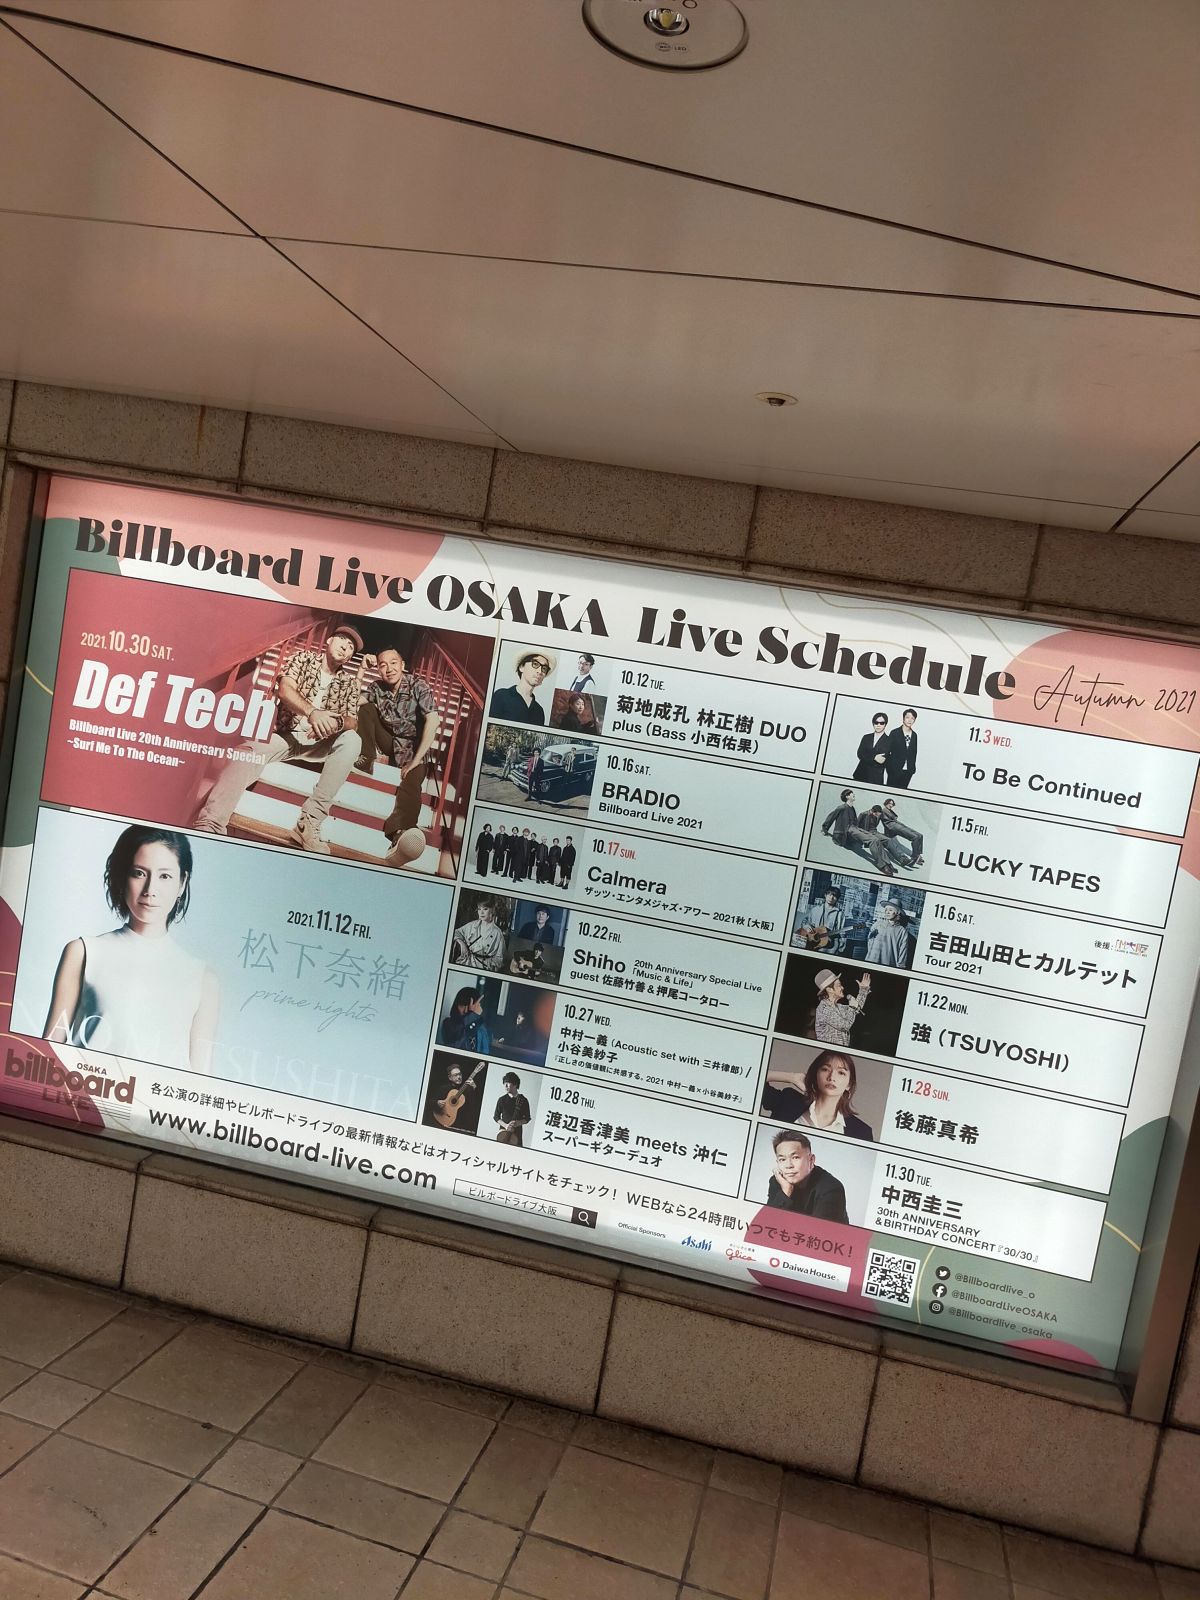 ビルボード大阪のスケジュール